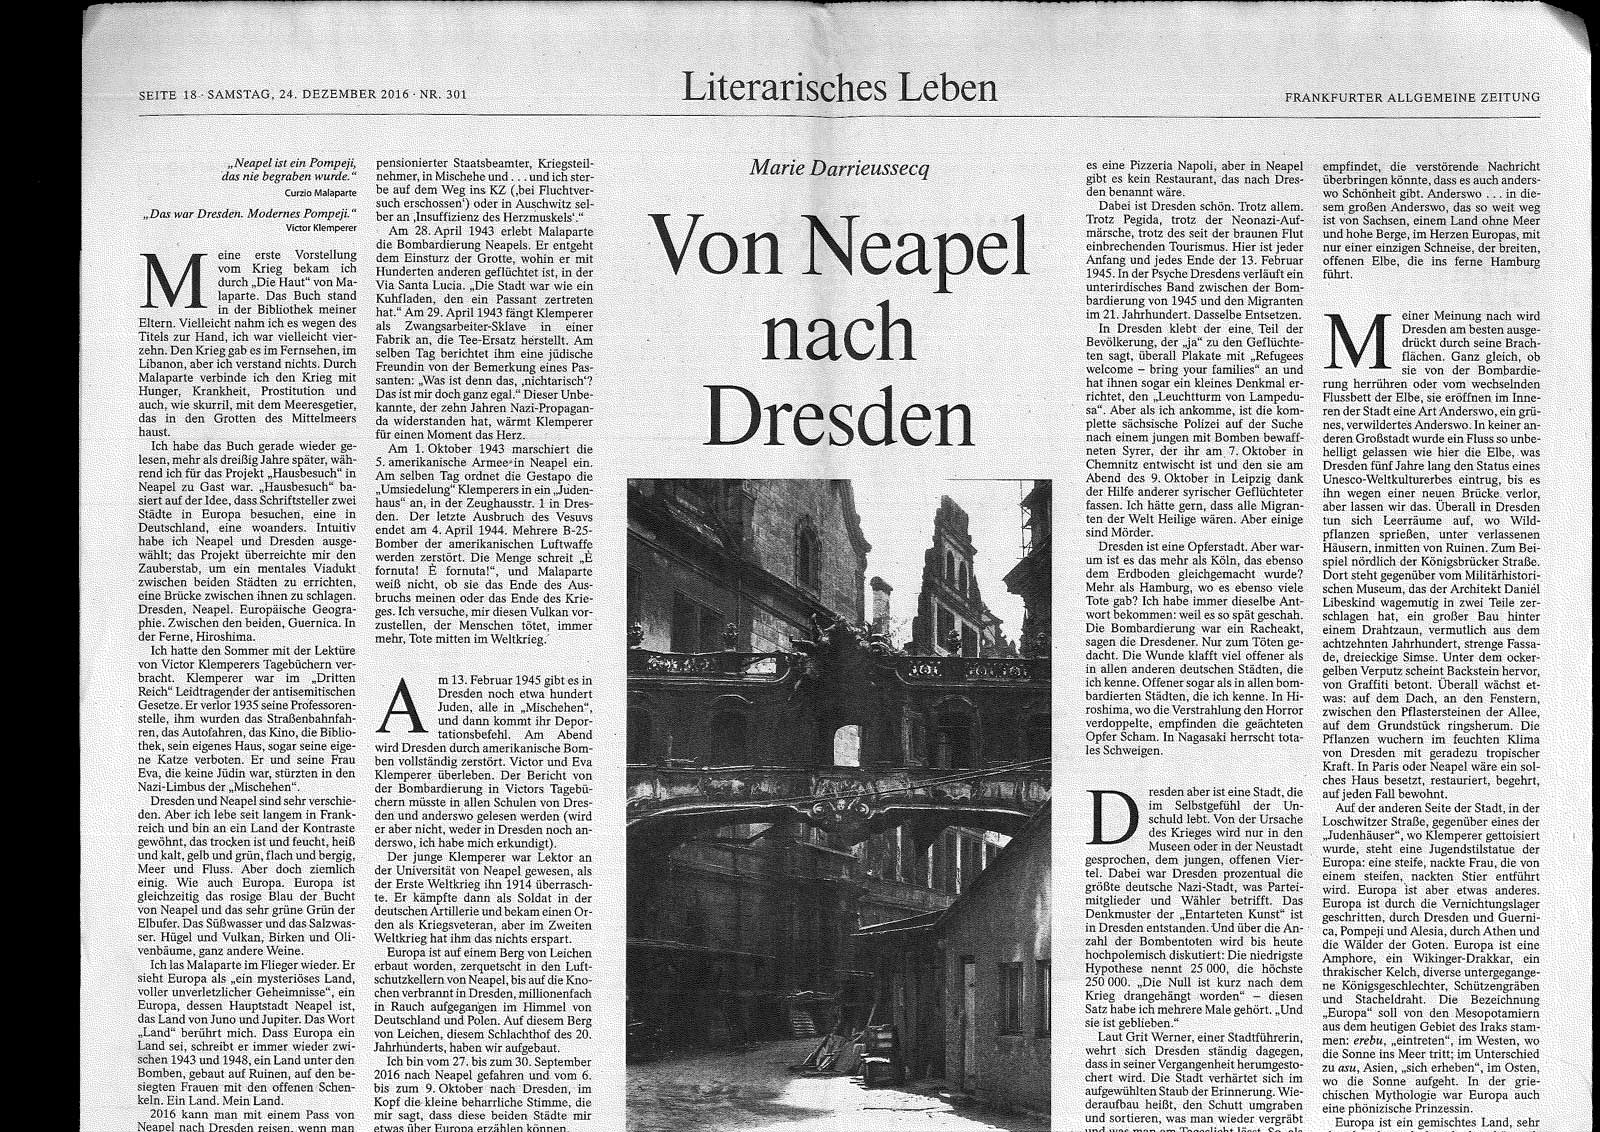 Von Neapel nach Dresden FAZ traduction du texte en allemand